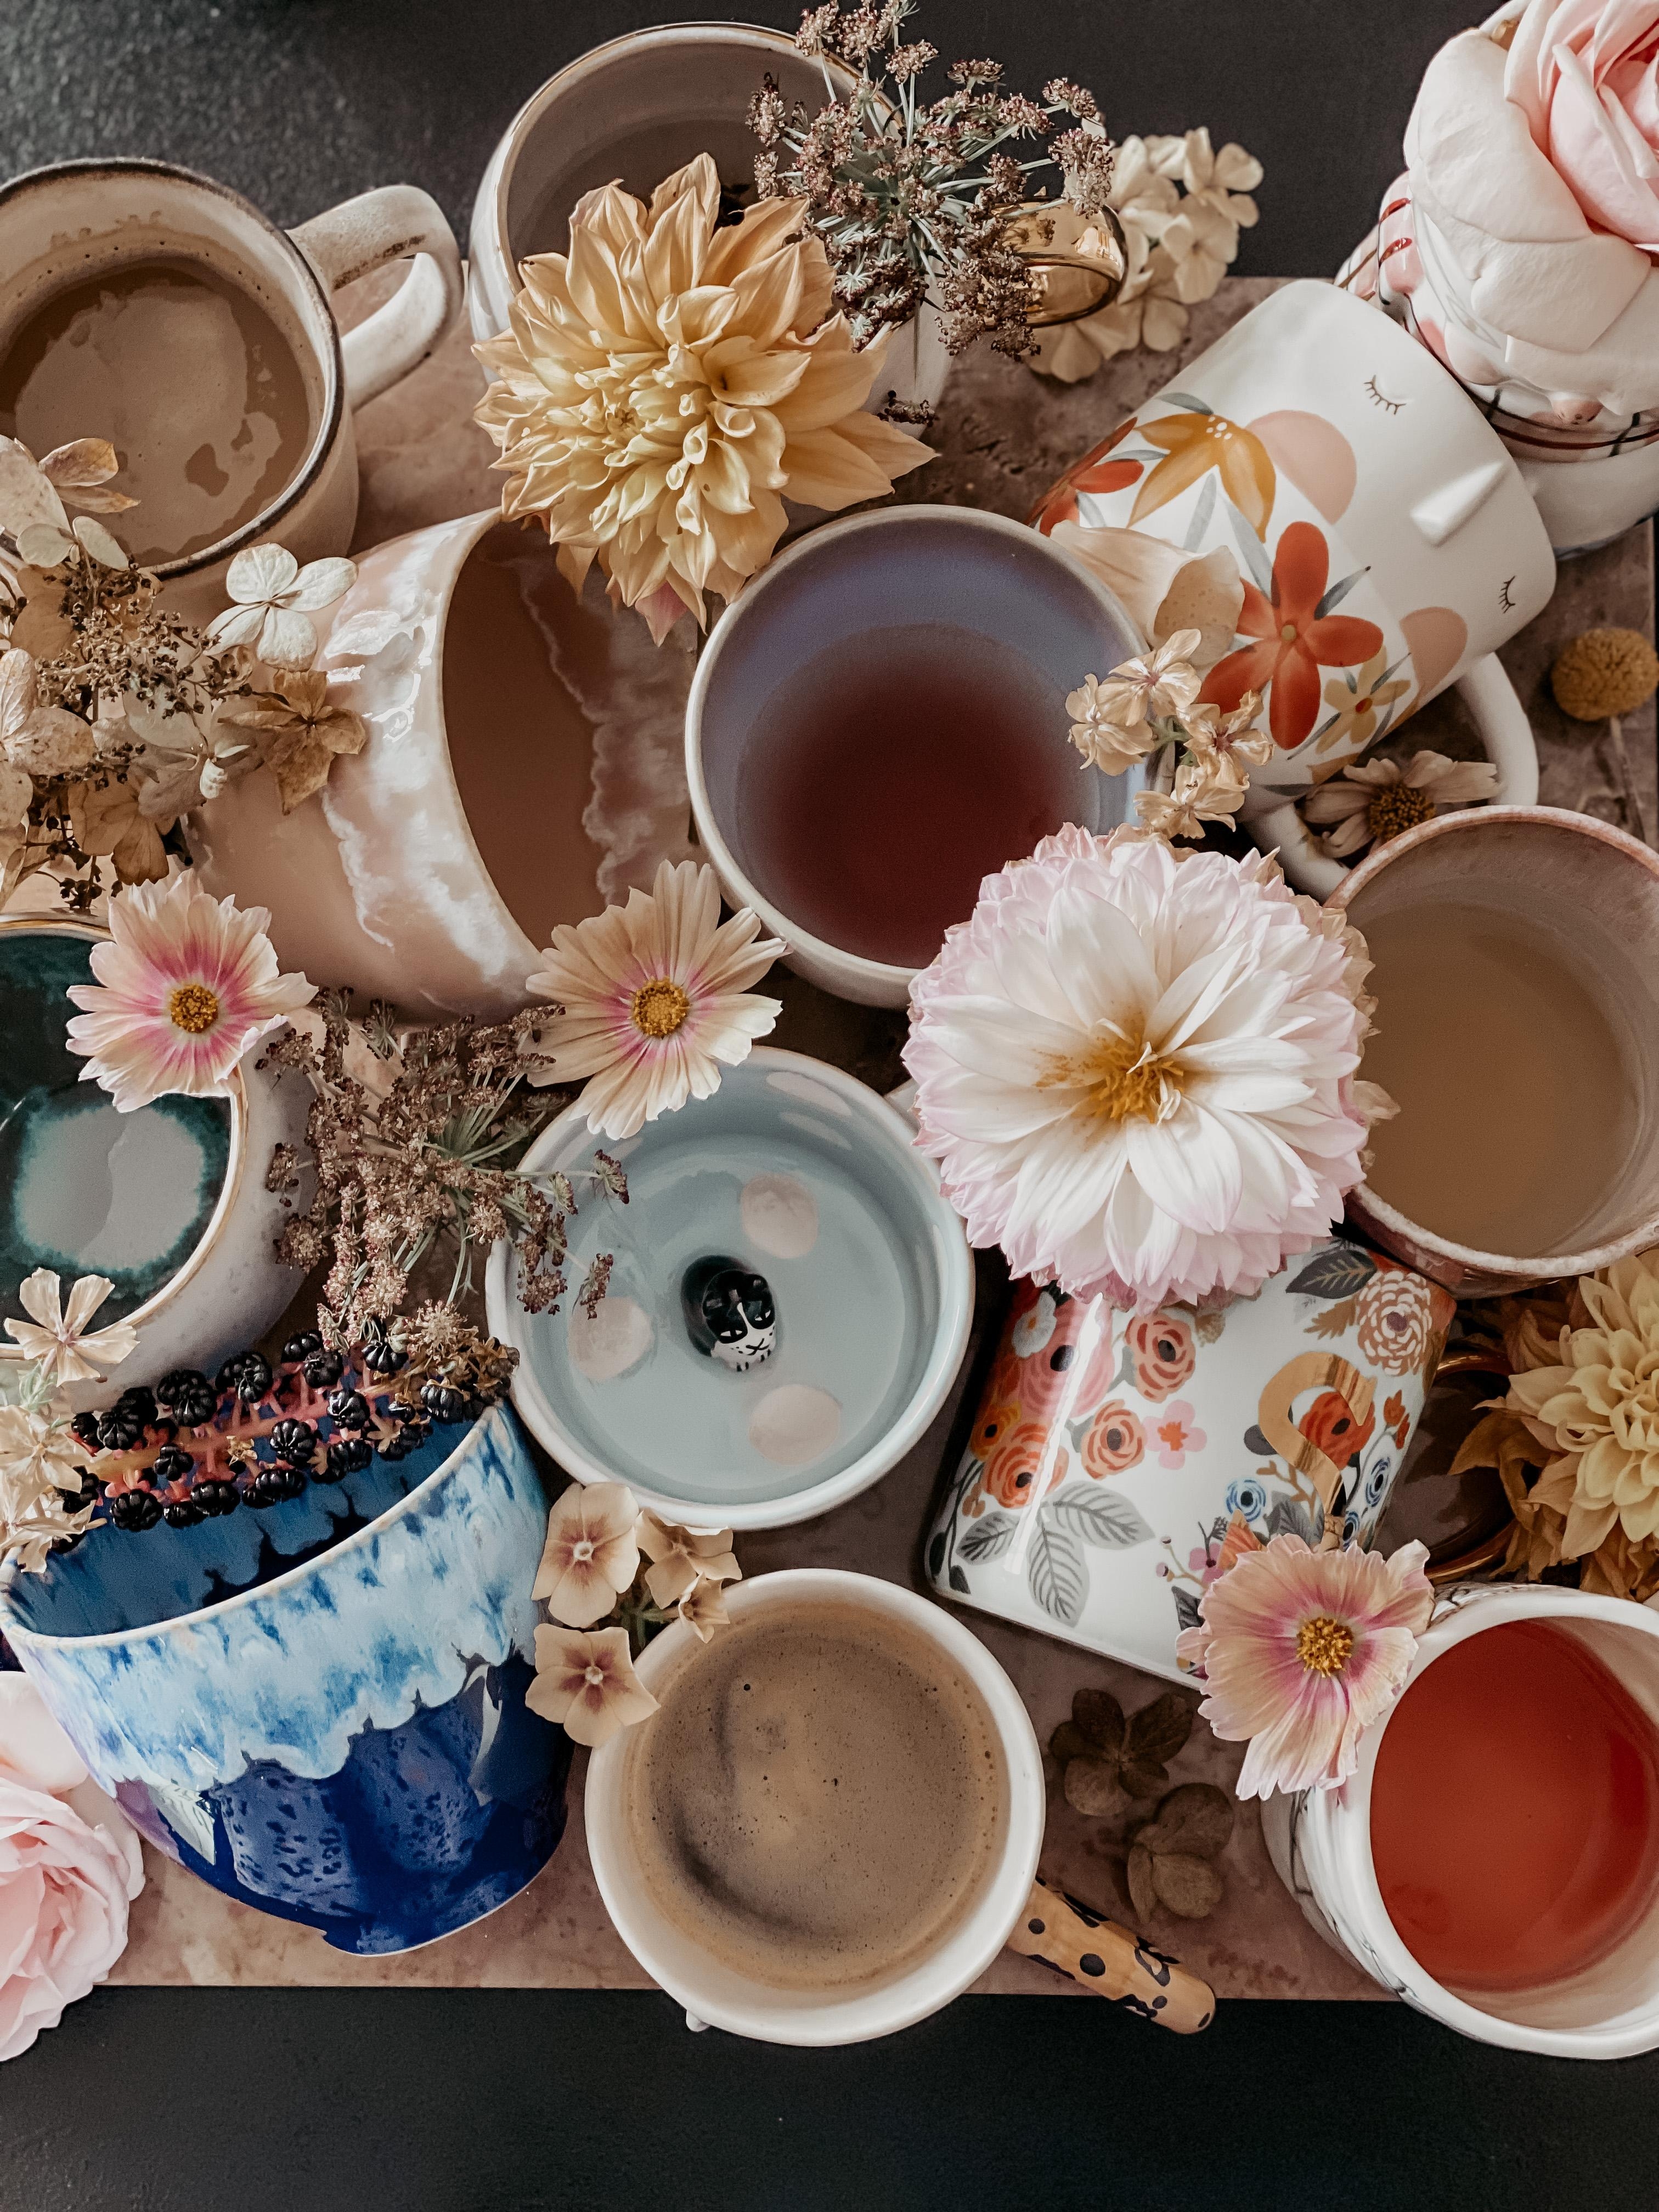 Gartenblumen und Tassen. Kaffee oder Tee bei euch? 
#herbstmood #freshflowerfriday #tassenliebe #couchstyle